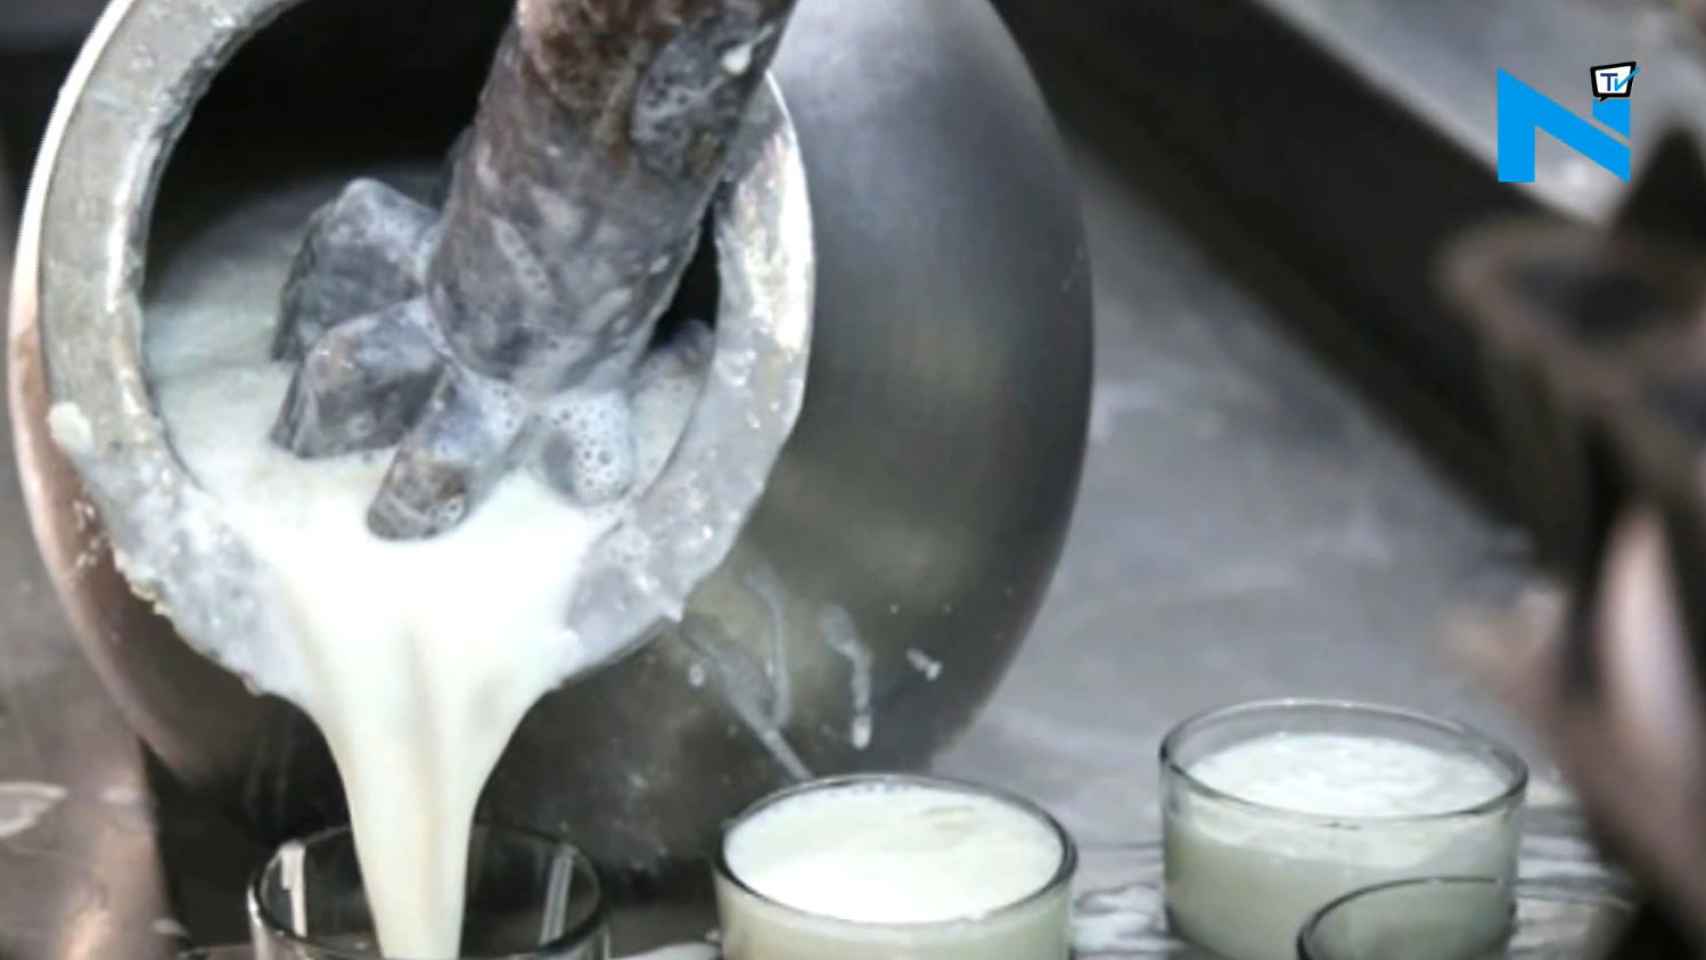 La leche envenenada fue a parar al cubo de lassi que su suegra estaba preparando.